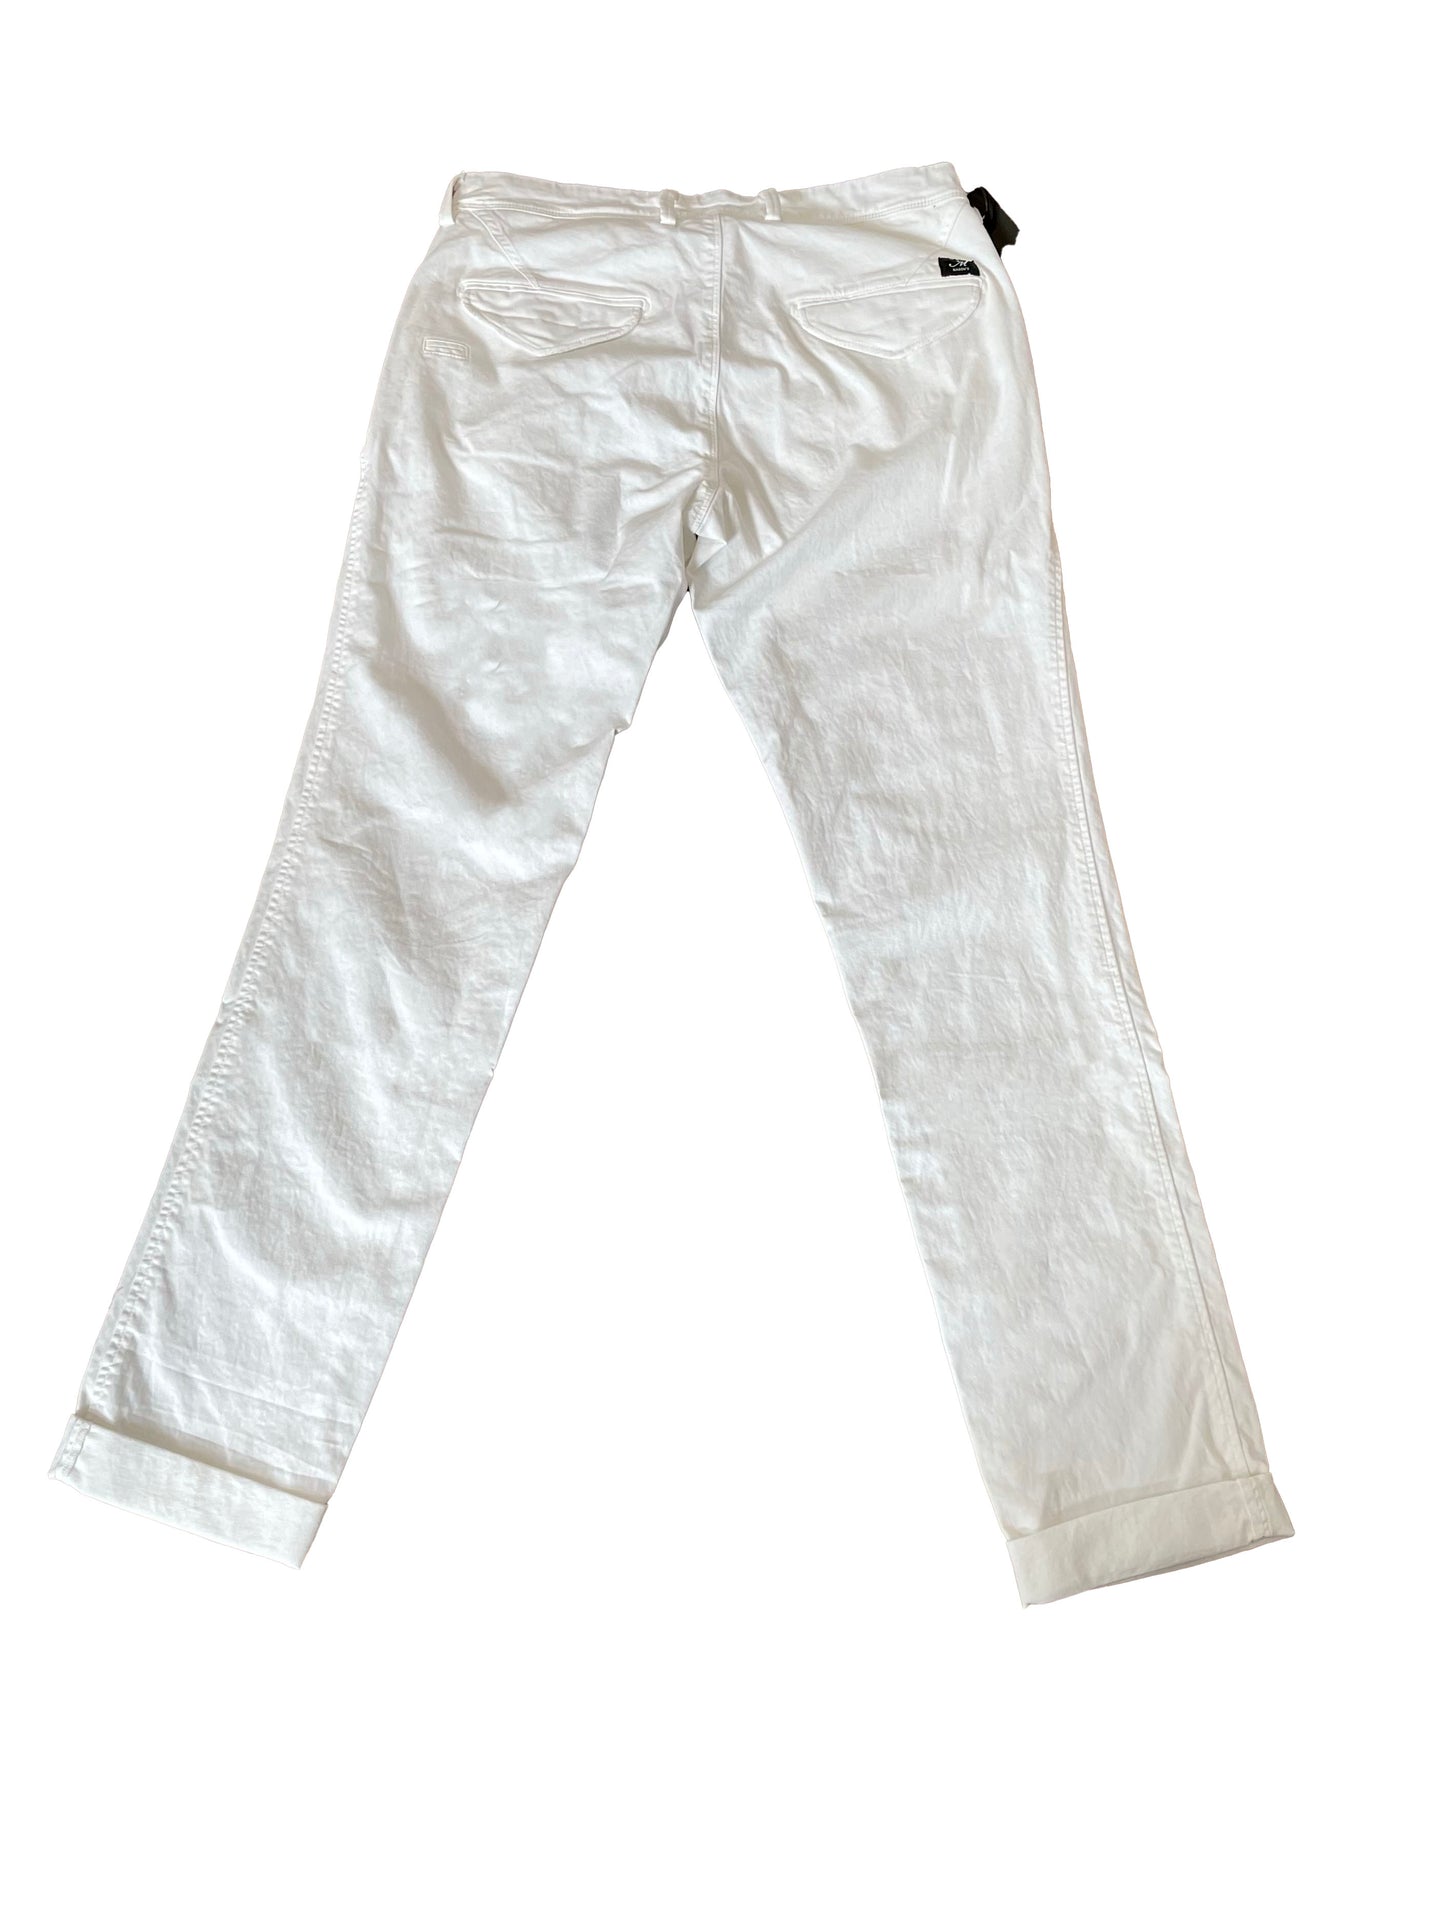 Masons Eisenhower 1 White Pants